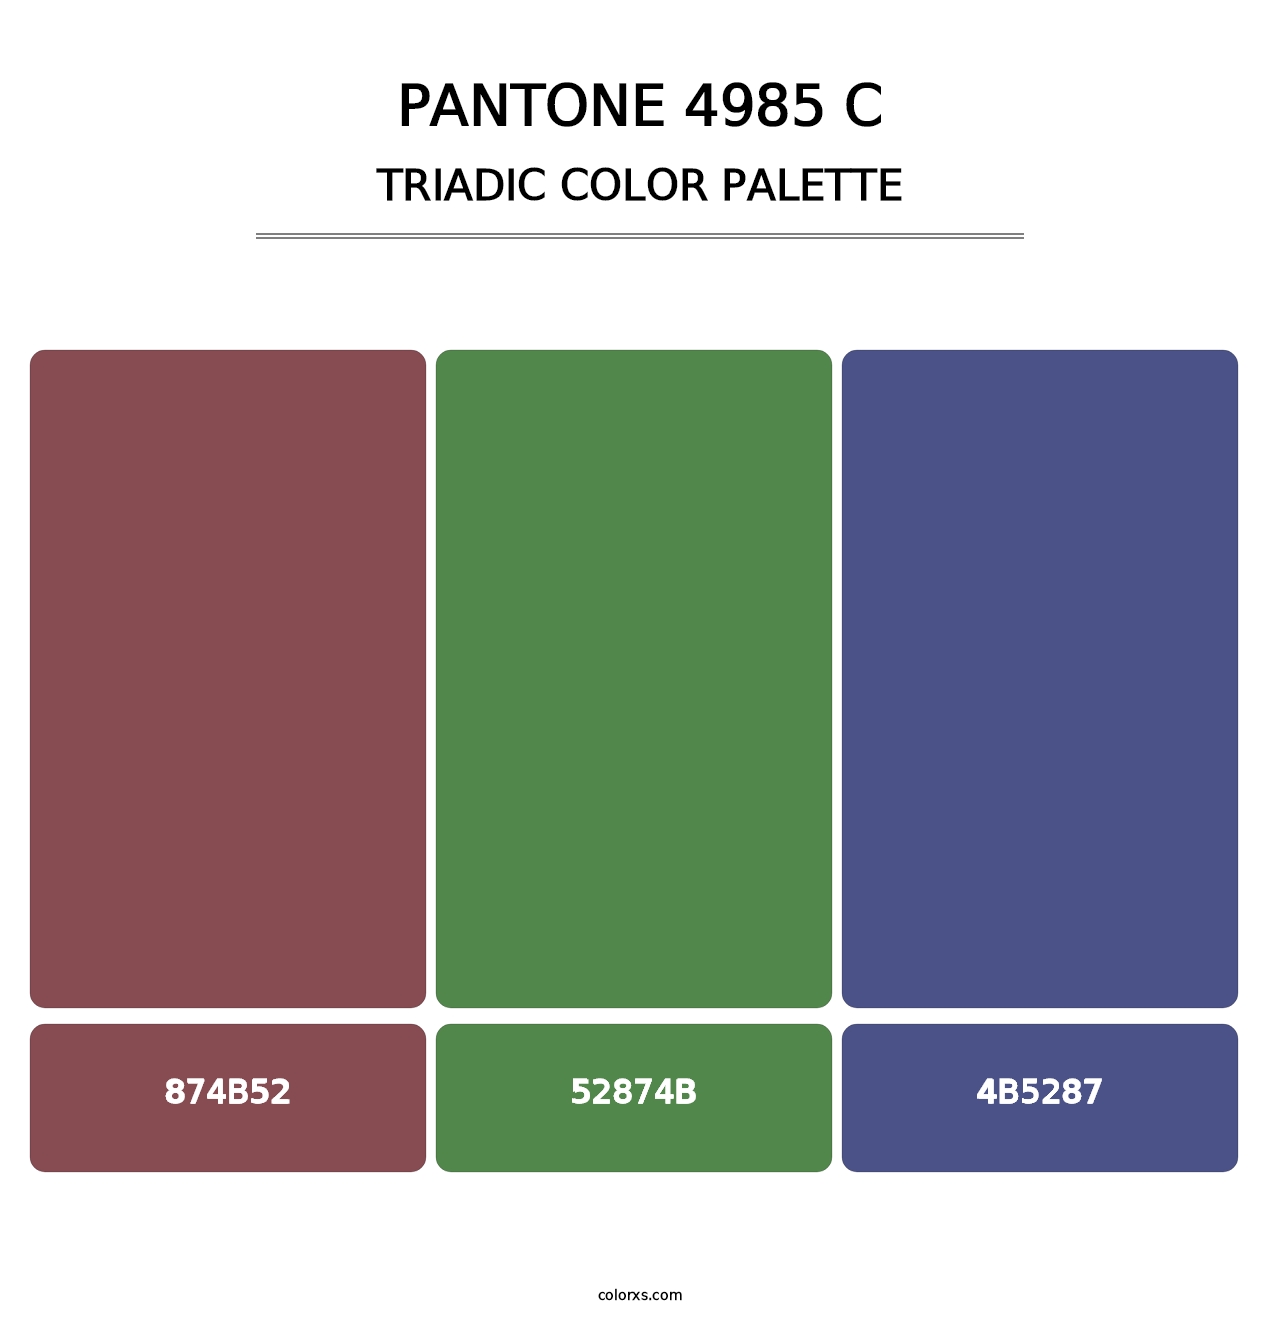 PANTONE 4985 C - Triadic Color Palette